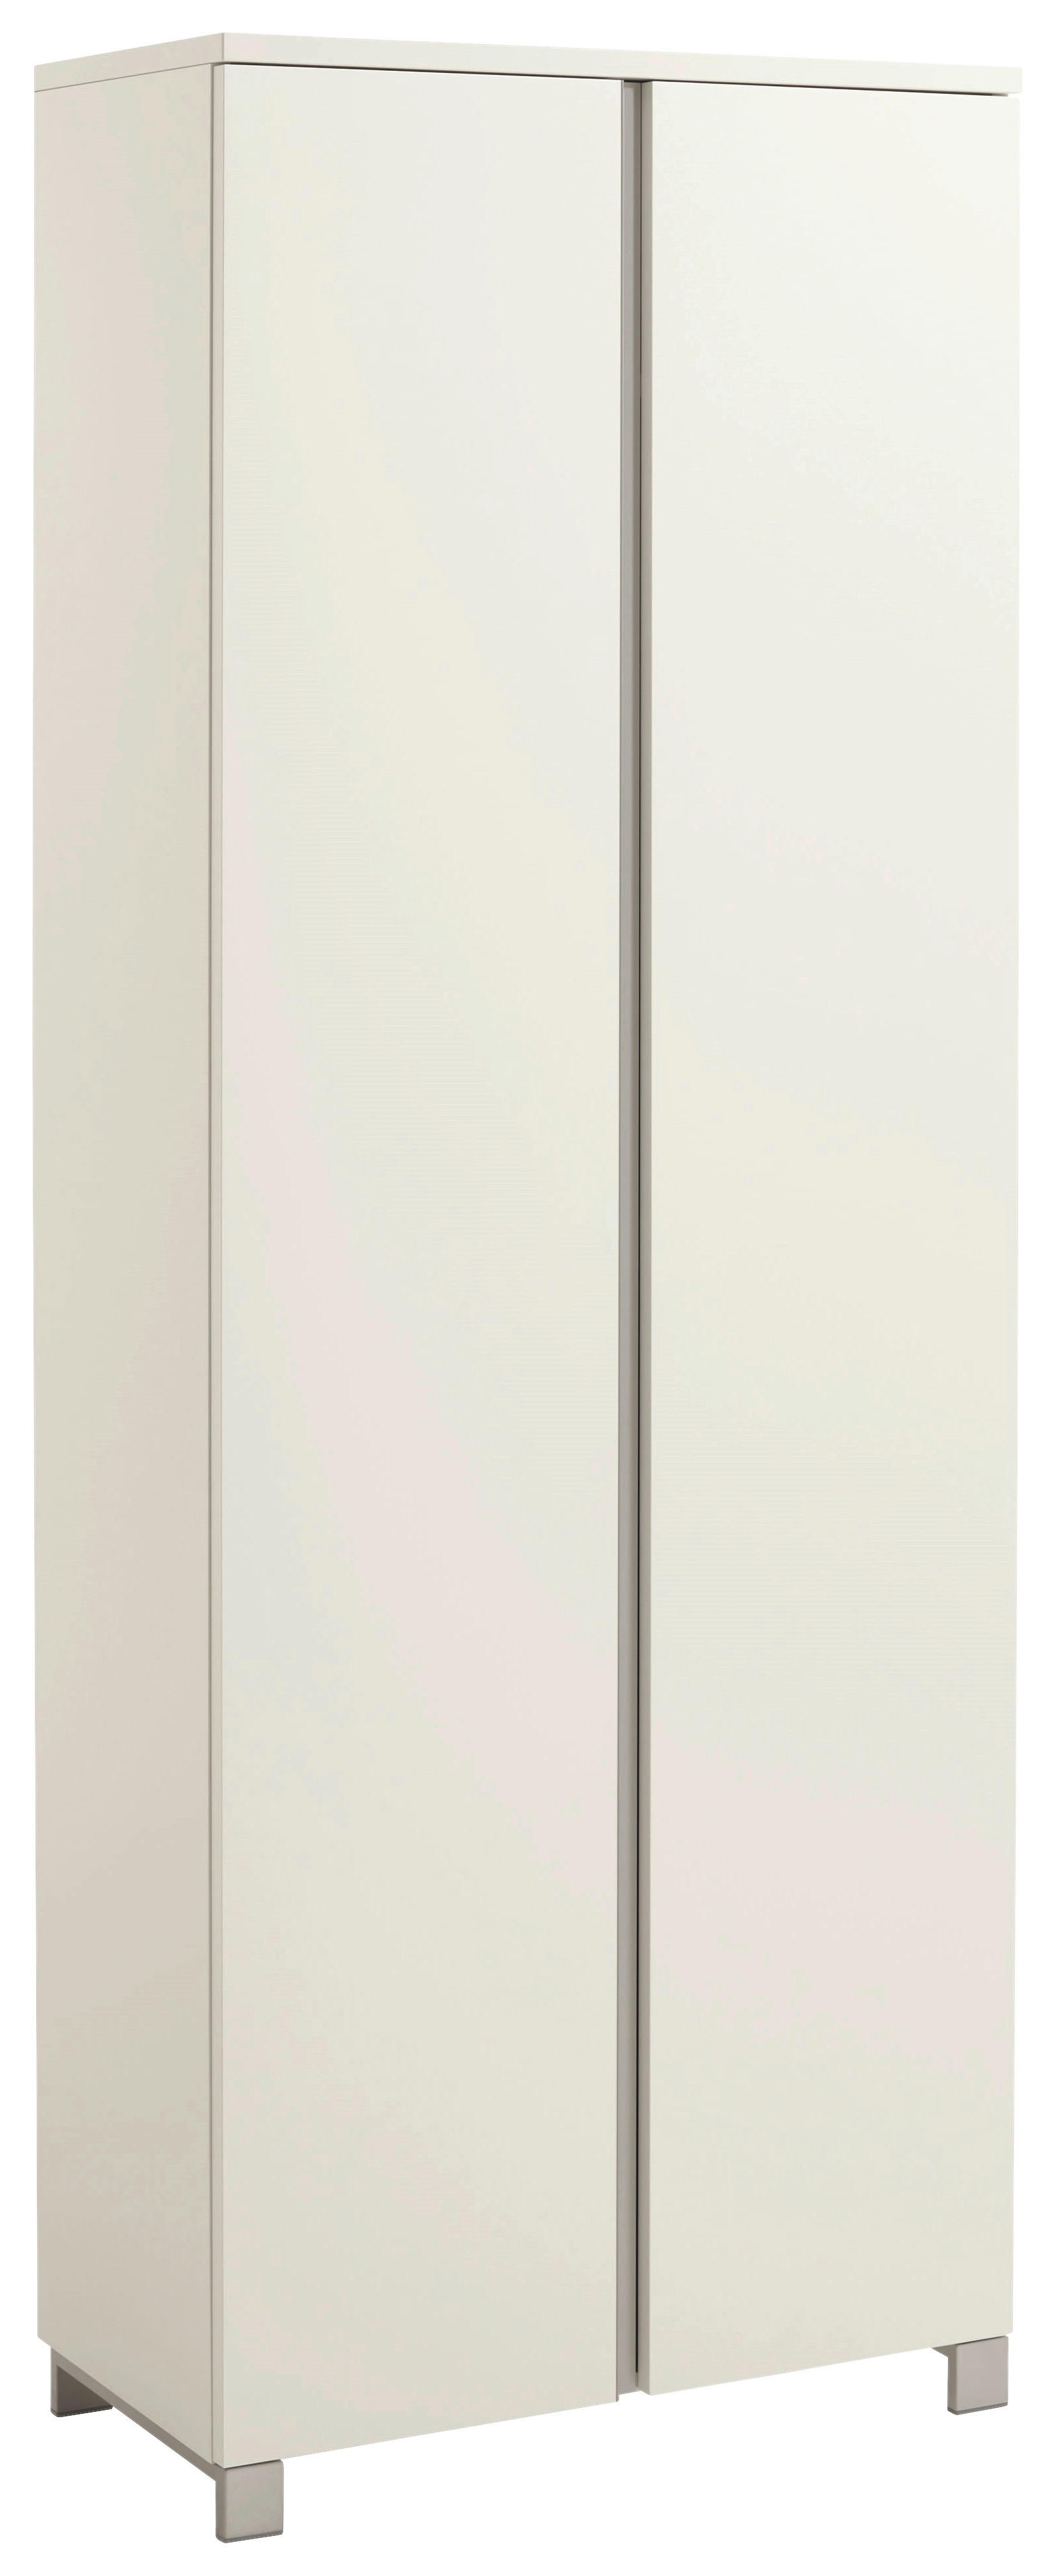 GARDEROBENSCHRANK 70/193/37 cm  - Silberfarben/Weiß, Design, Holzwerkstoff (70/193/37cm)